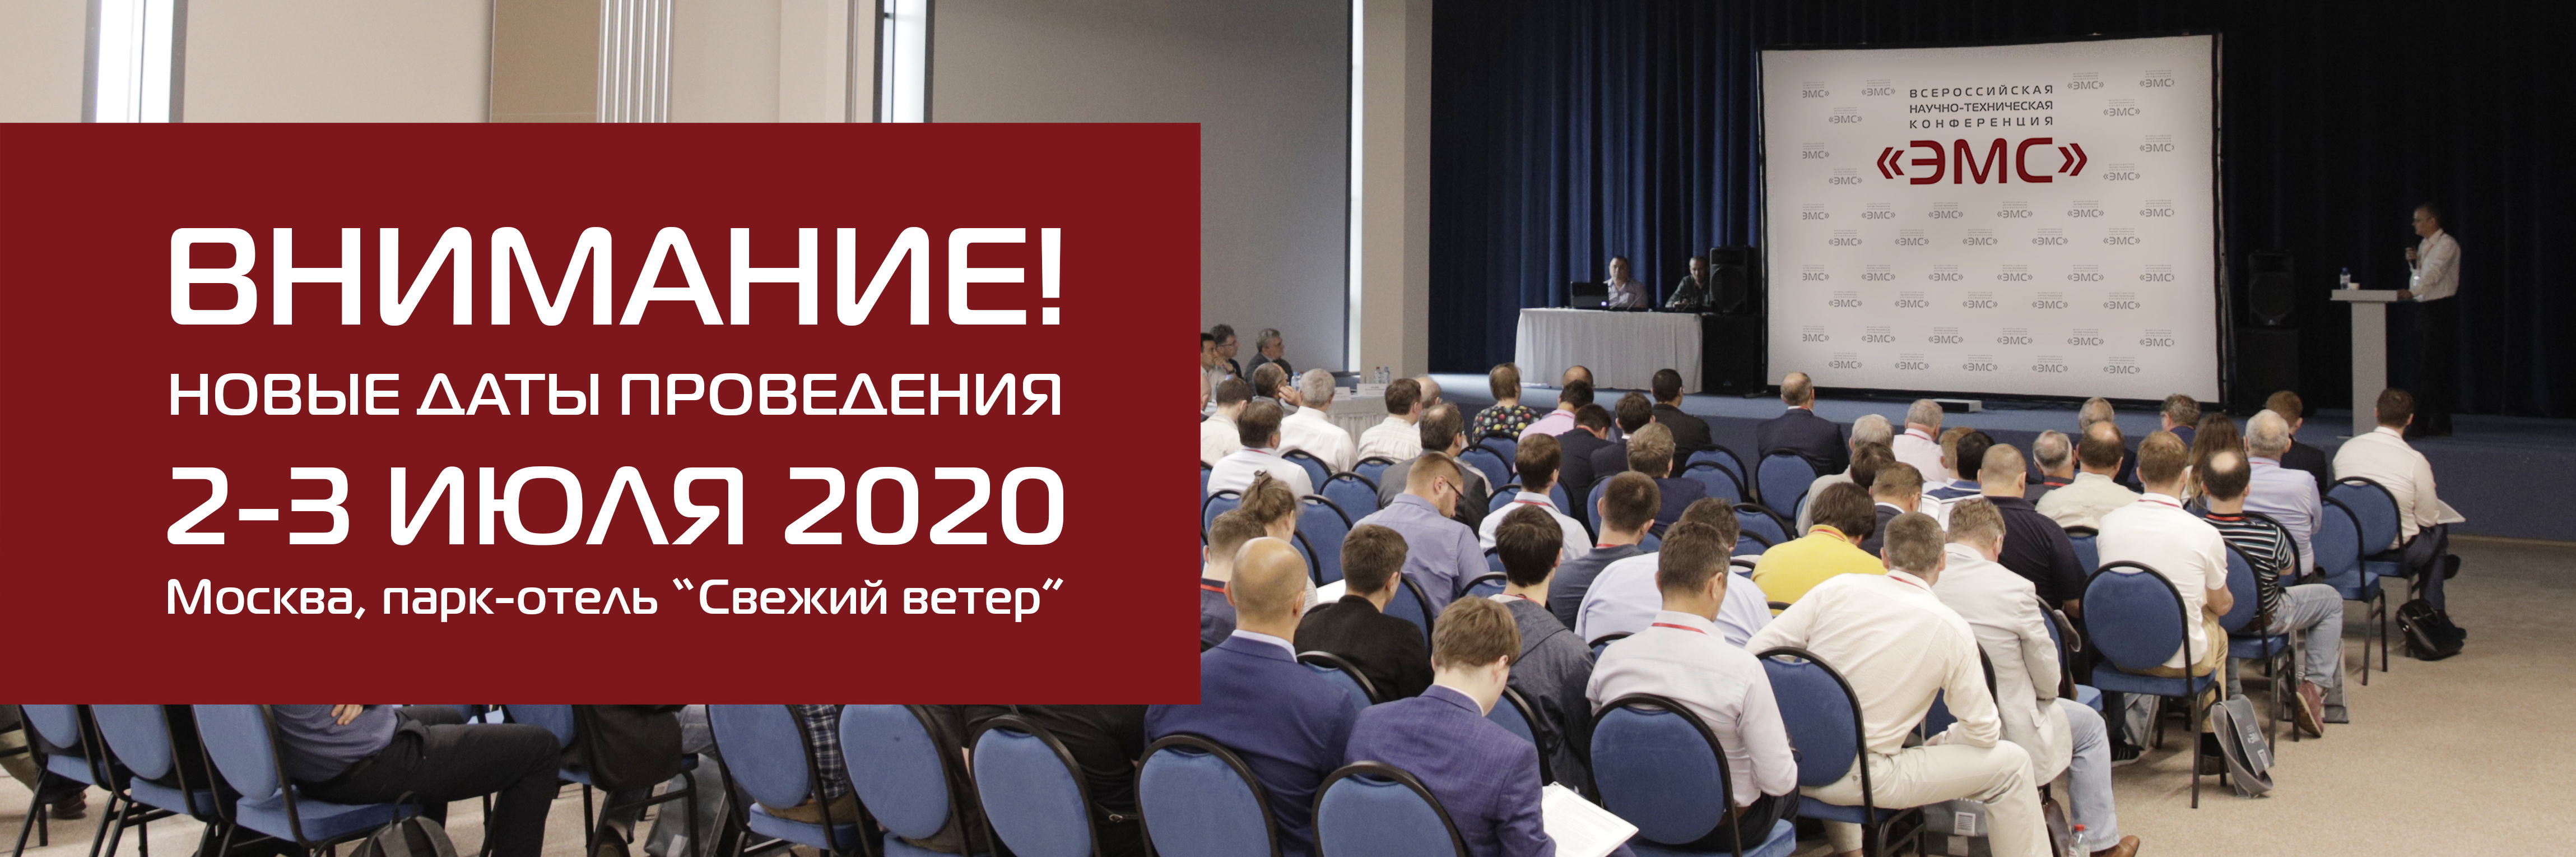 Ix всероссийская научная конференция. Конференция ЭМС. Конференции. Обучающее оффлайн конференция.